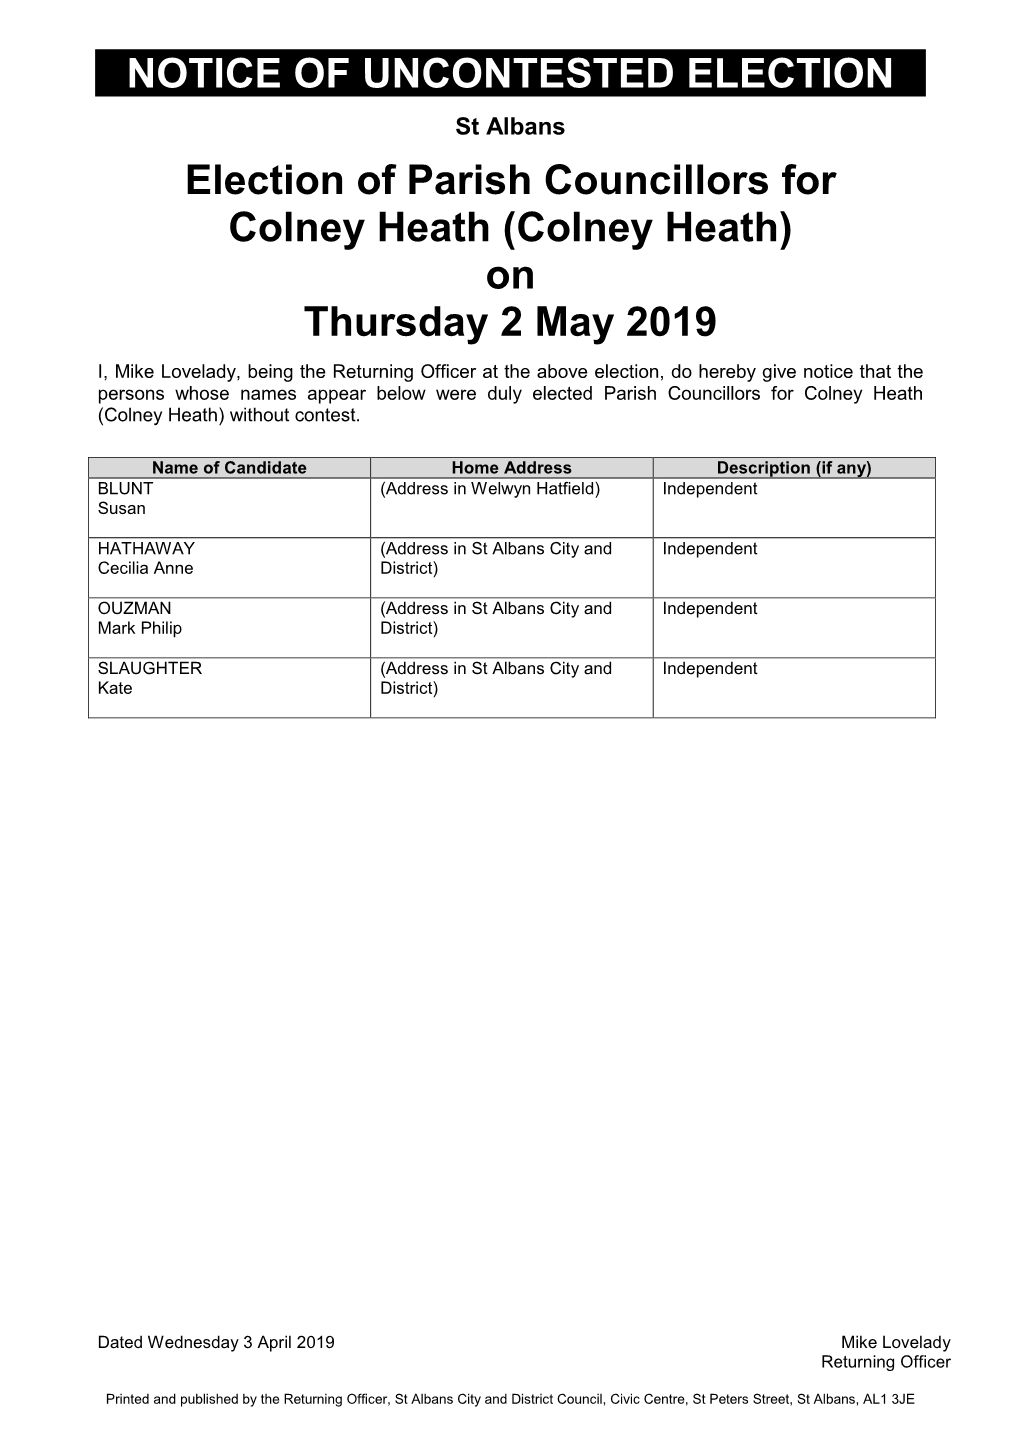 Colney Heath (Colney Heath) on Thursday 2 May 2019